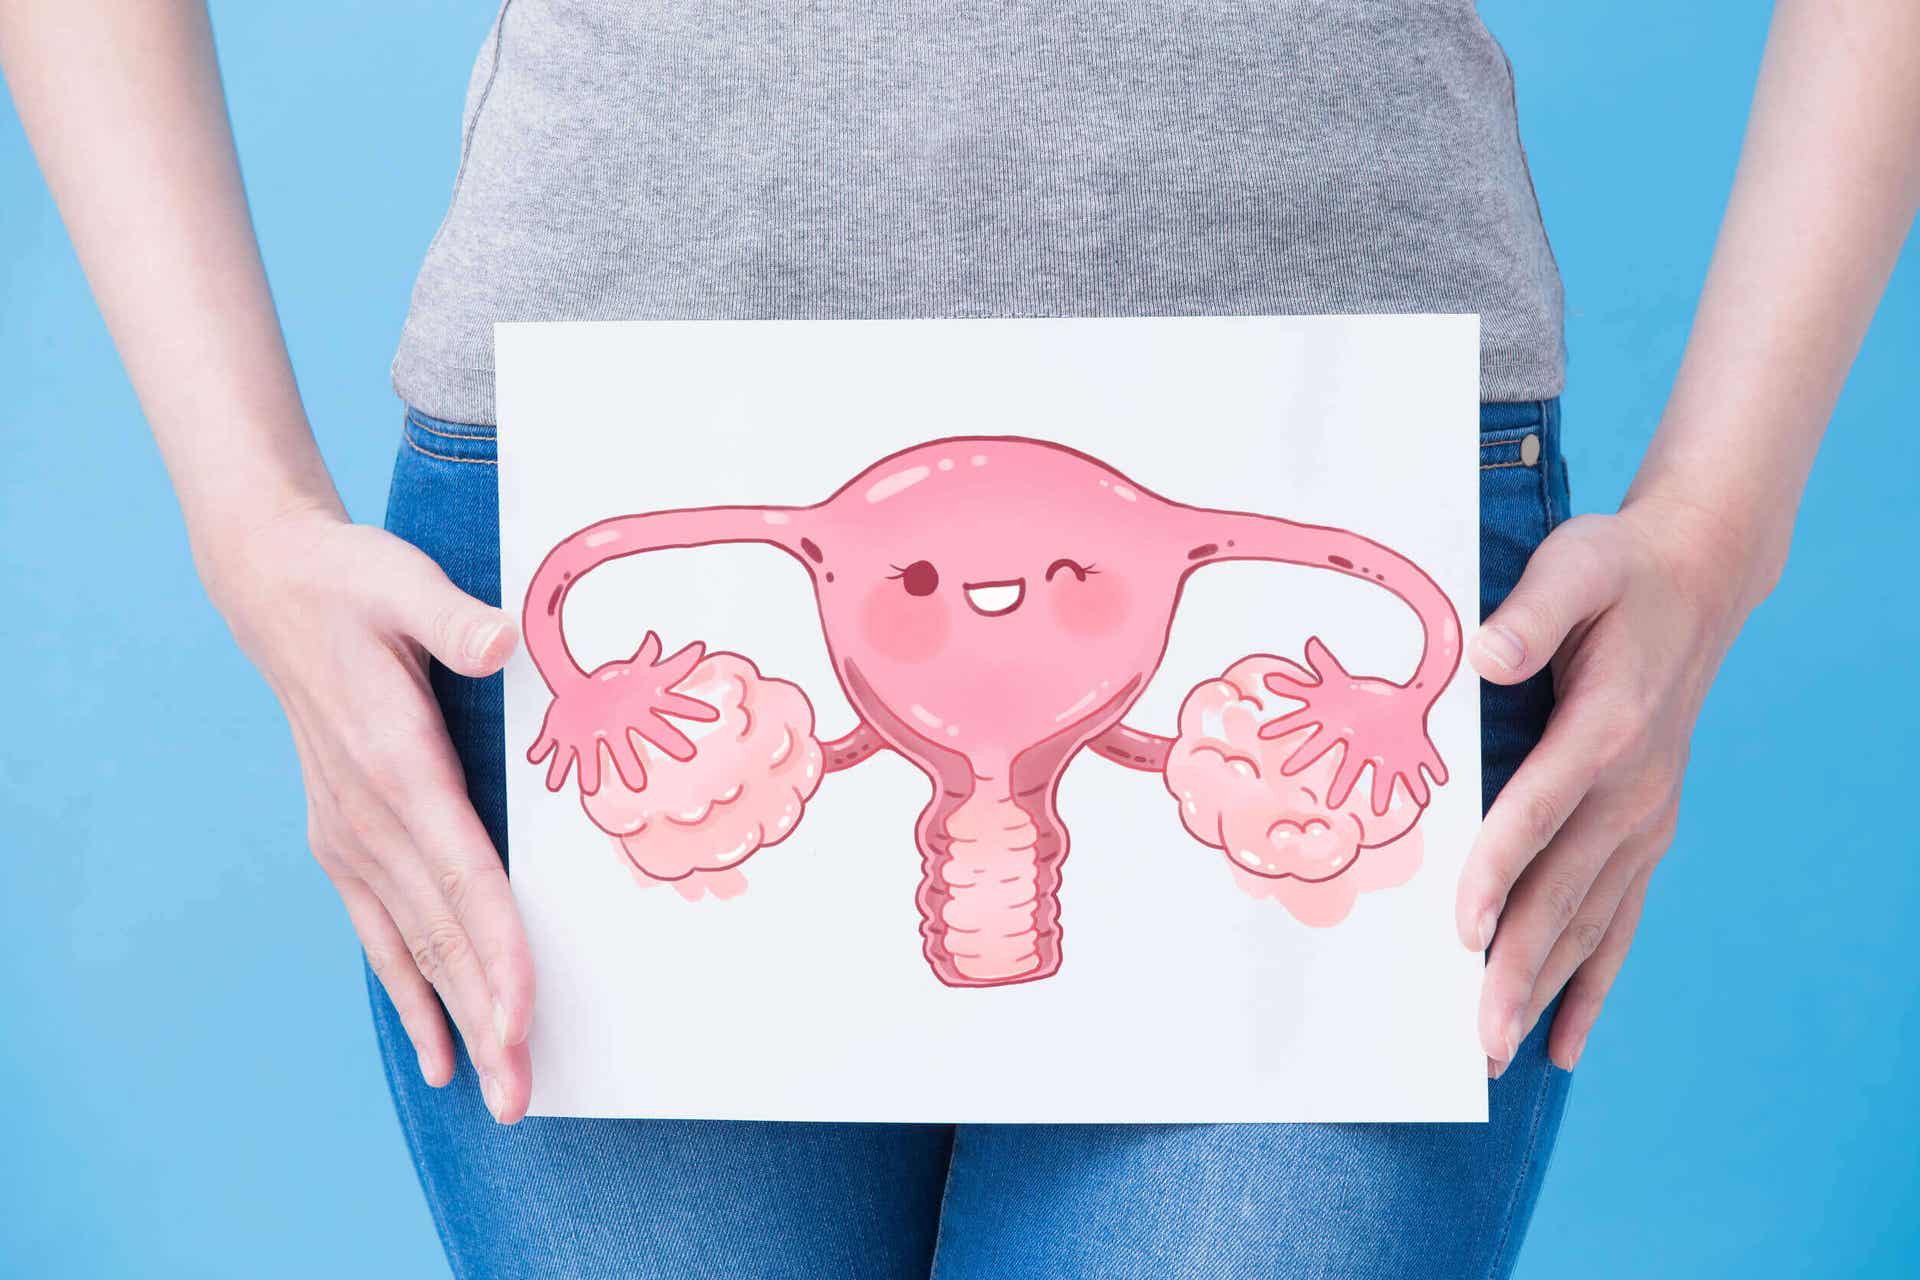 Een vrouw met een cartoonafbeelding van de vrouwelijke voortplantingsorganen over haar onderbuik.